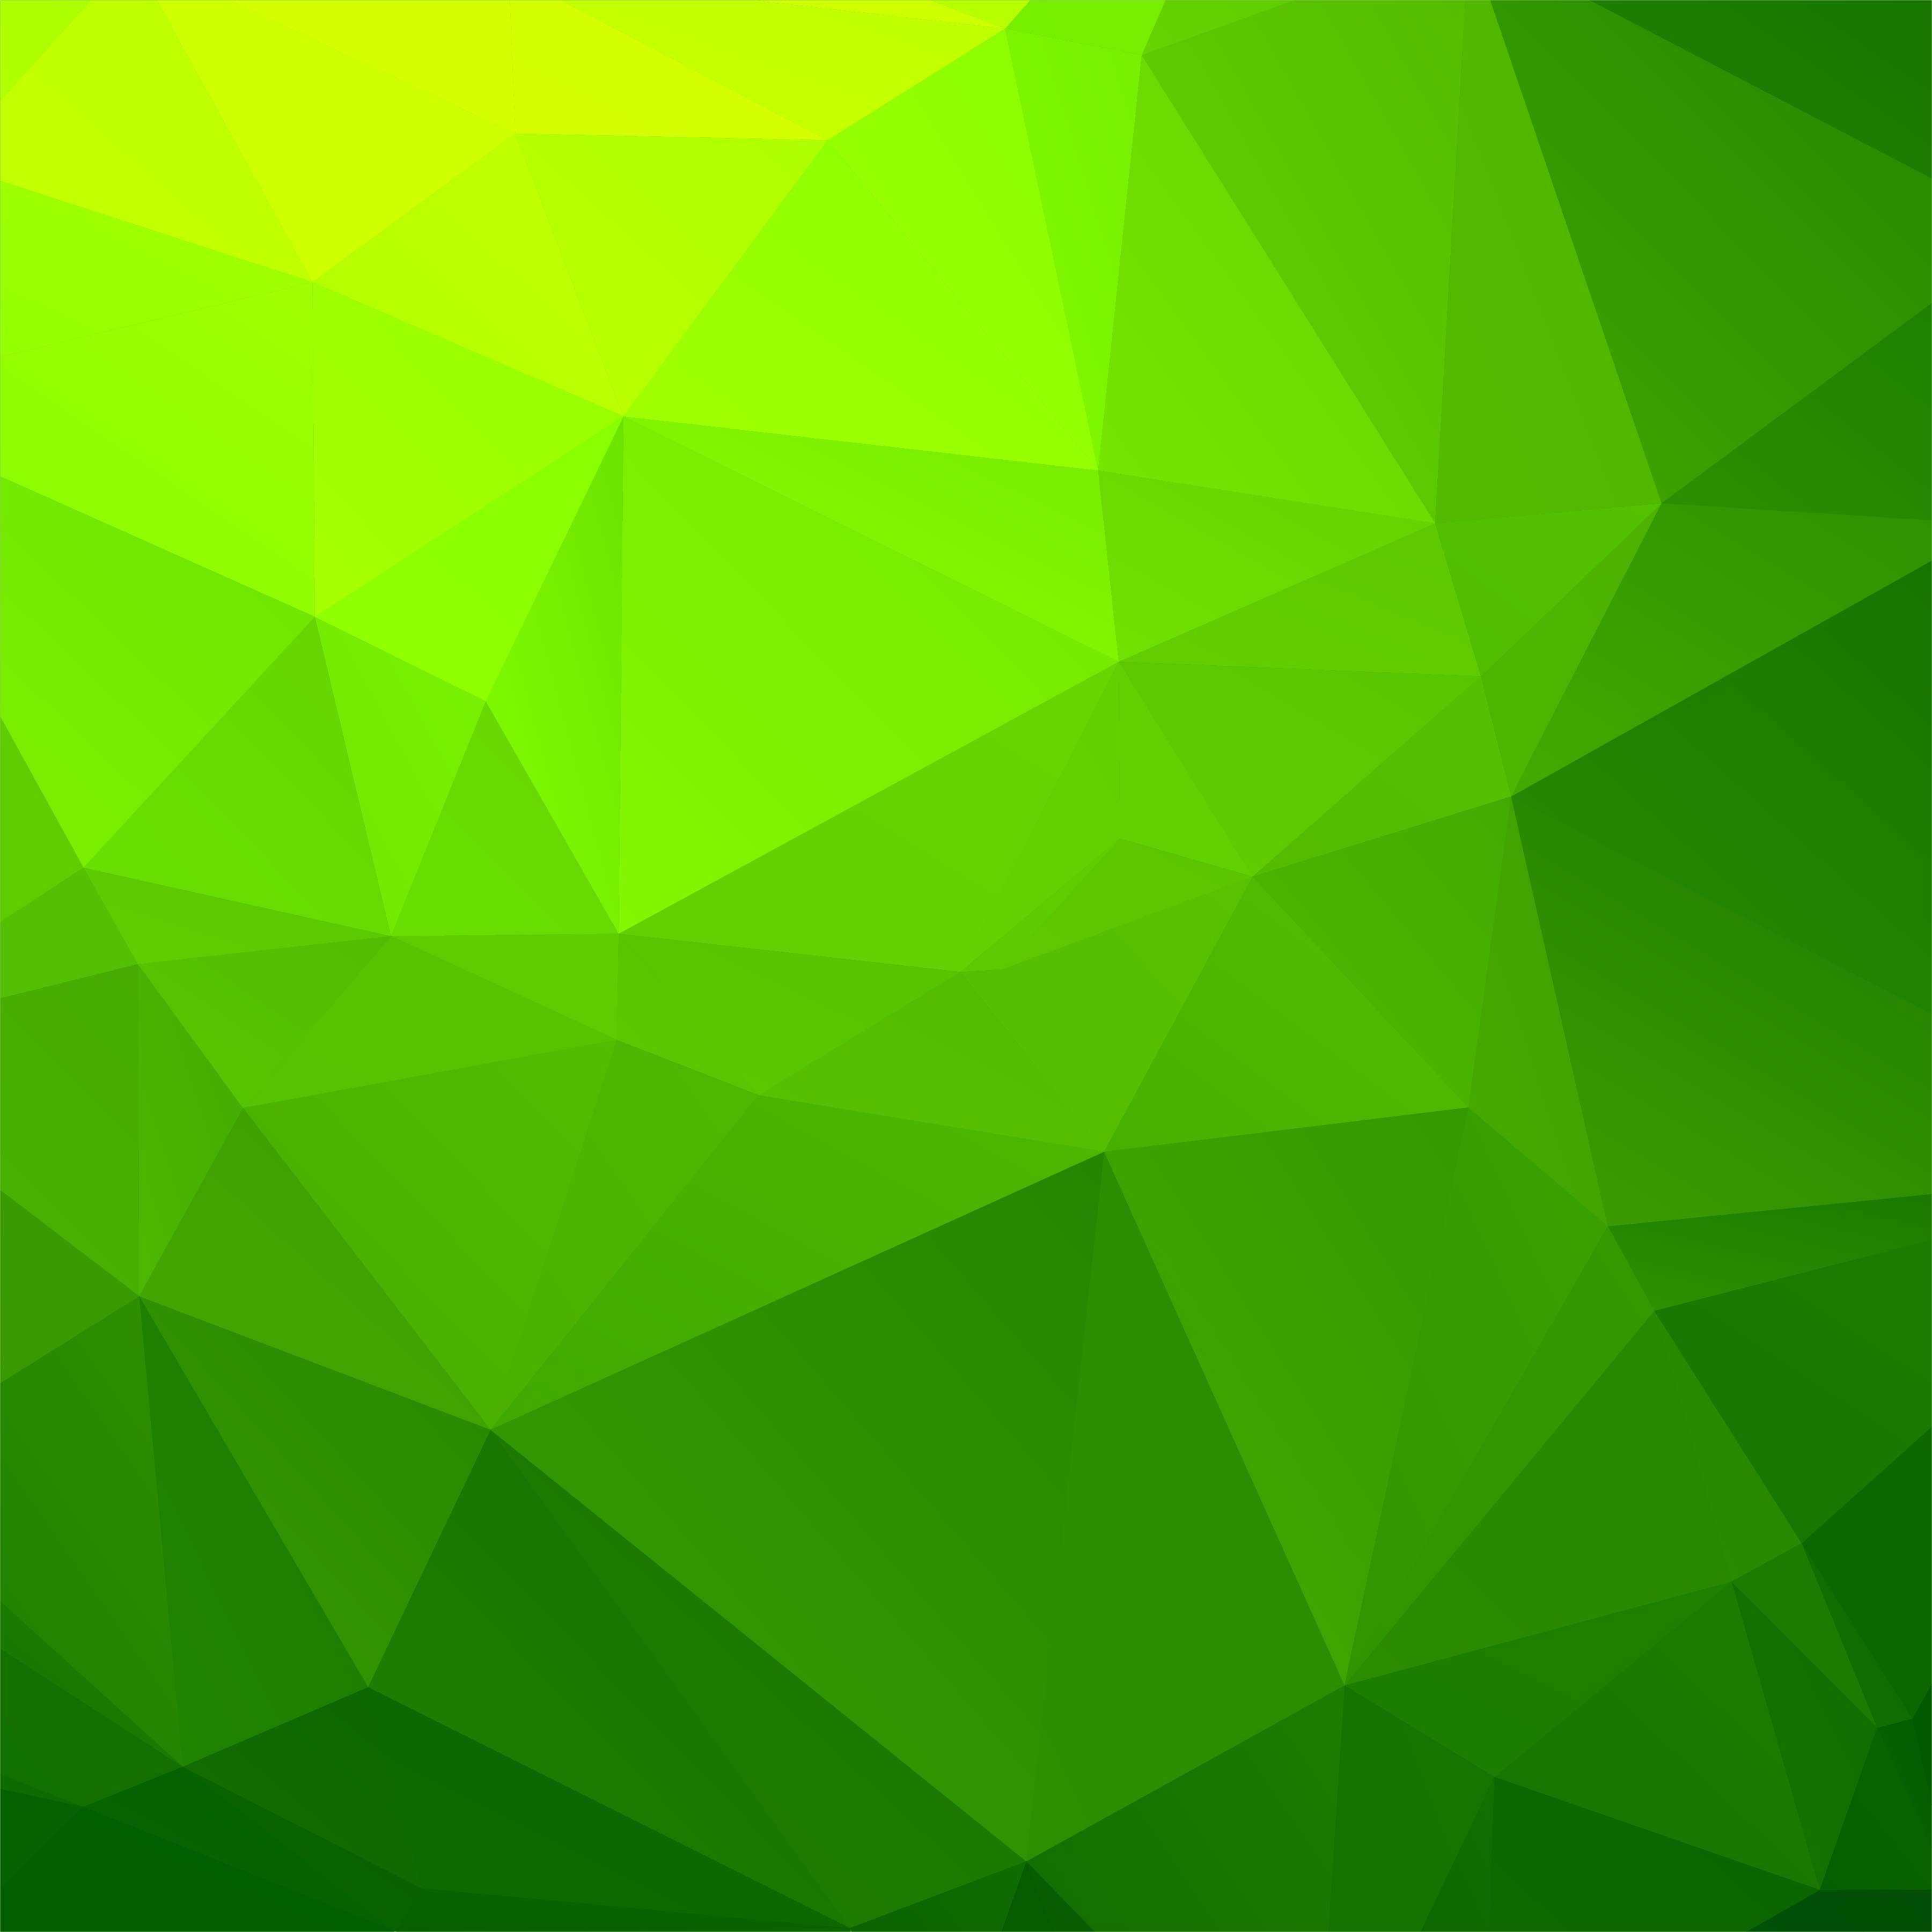 grüne geometrische tapete,grün,gelb,blatt,linie,muster